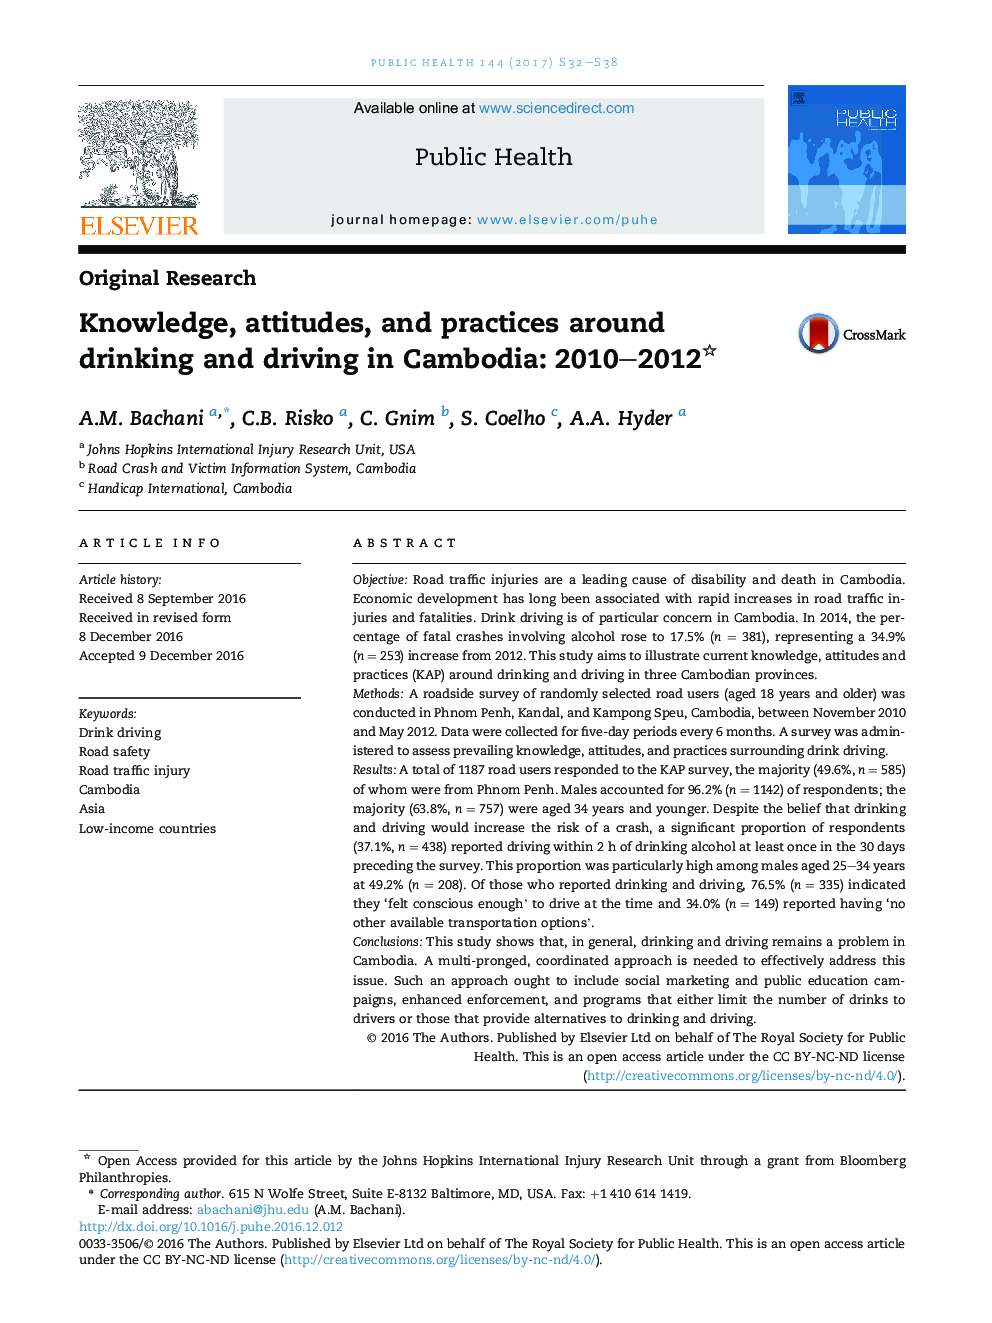 دانش، نگرش ها و شیوه های نوشیدن و رانندگی در کامبوج: 2010-2012 